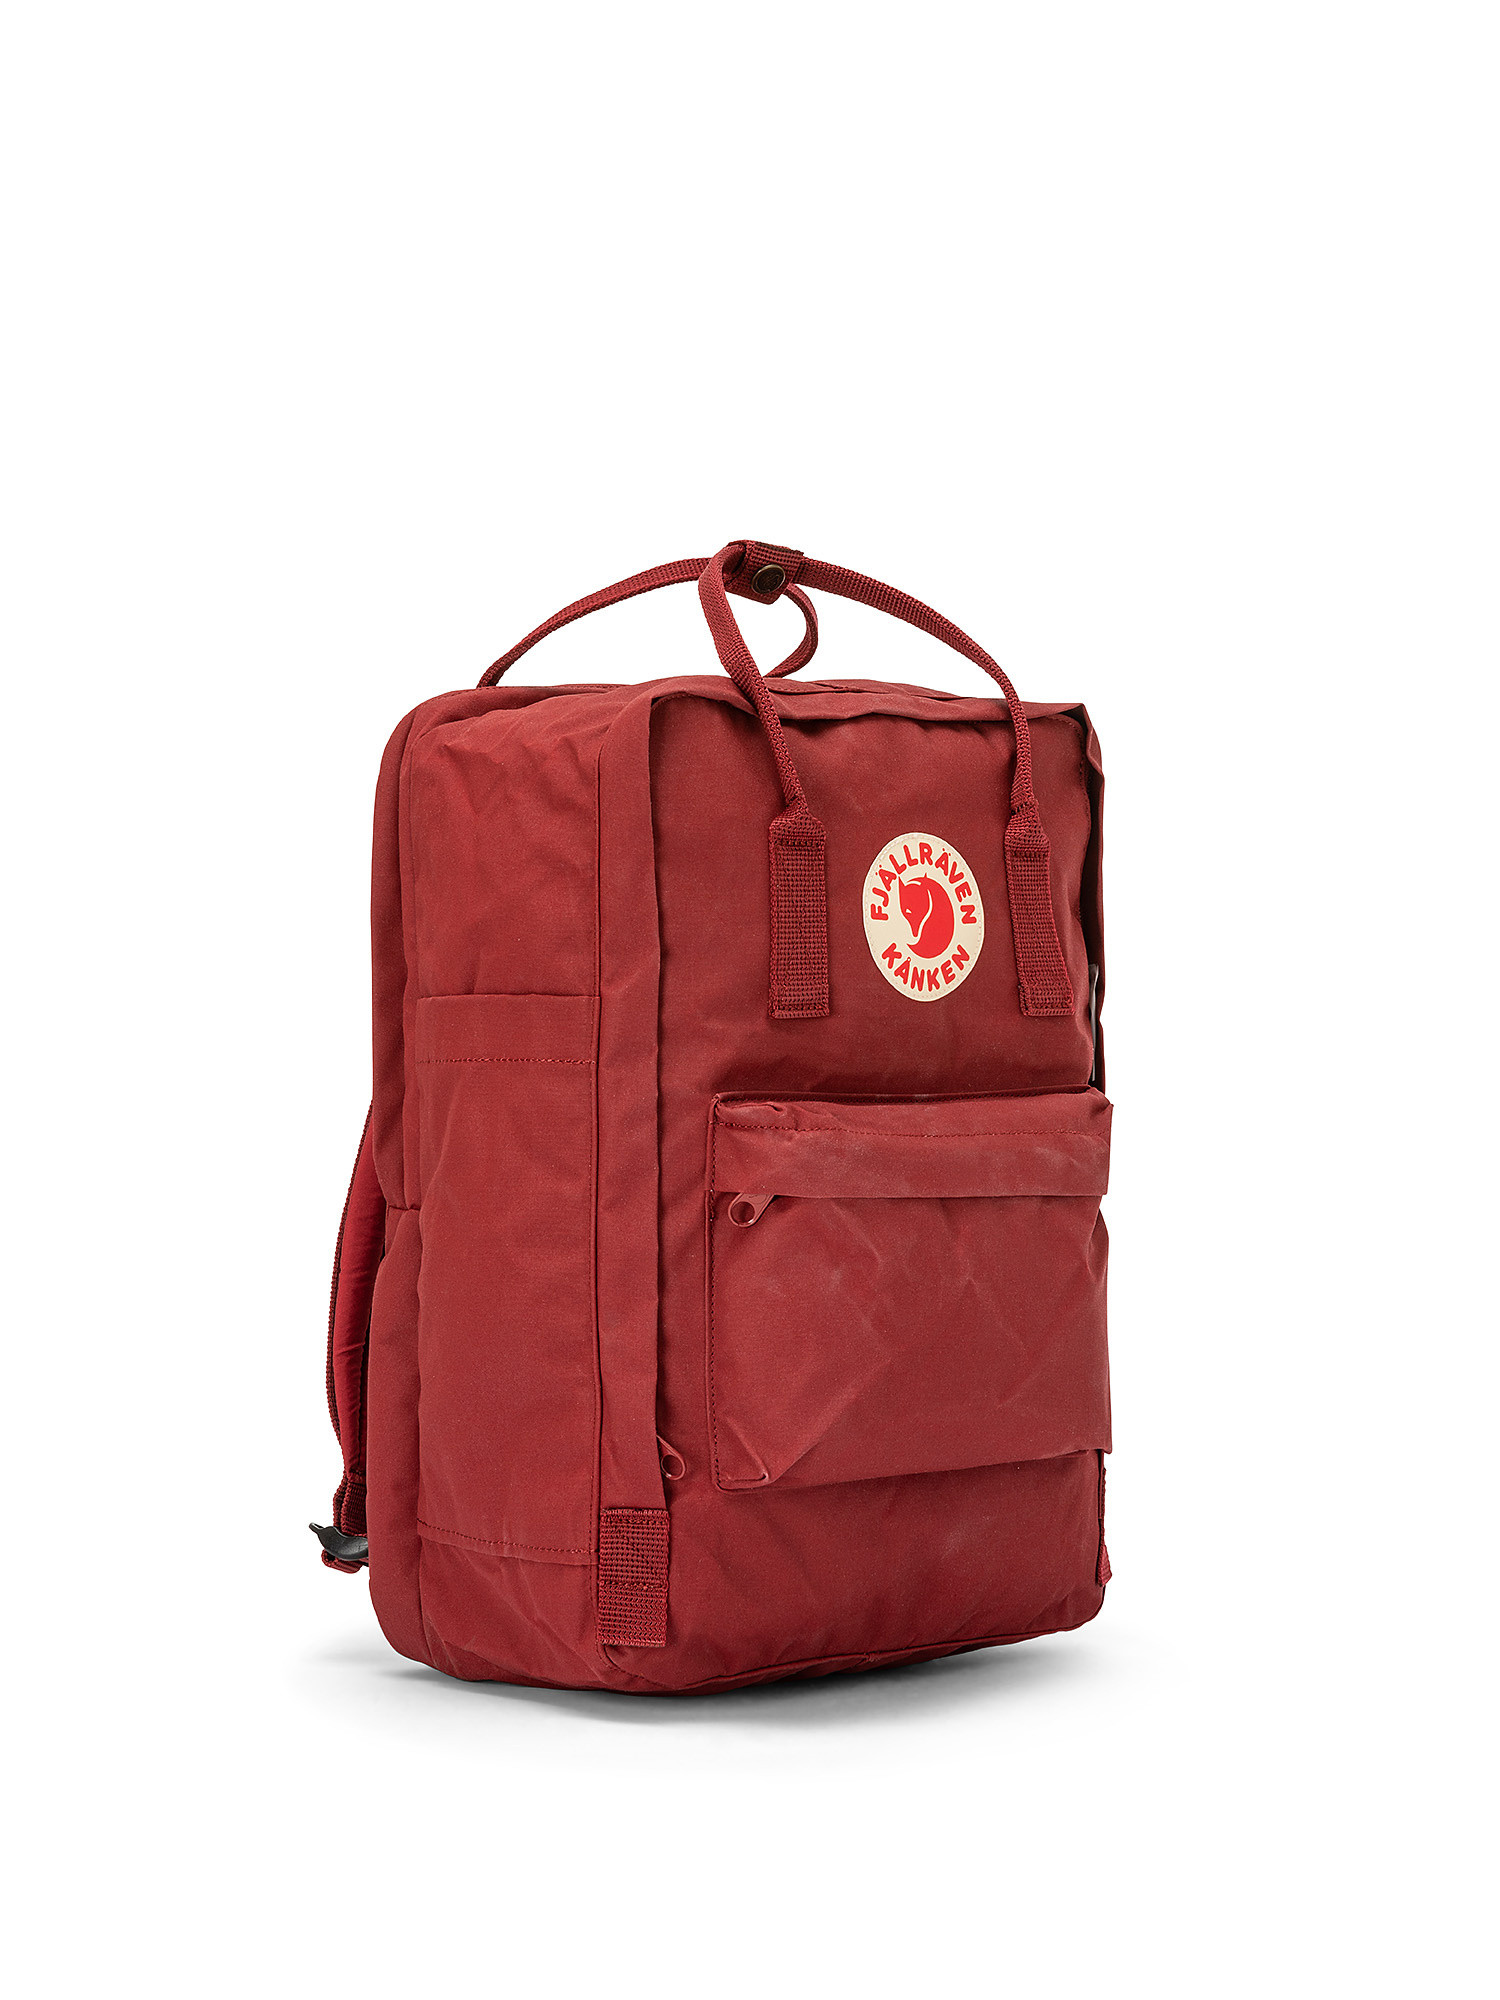 Kanken laptop backpack 15 ", Red Bordeaux, large image number 1